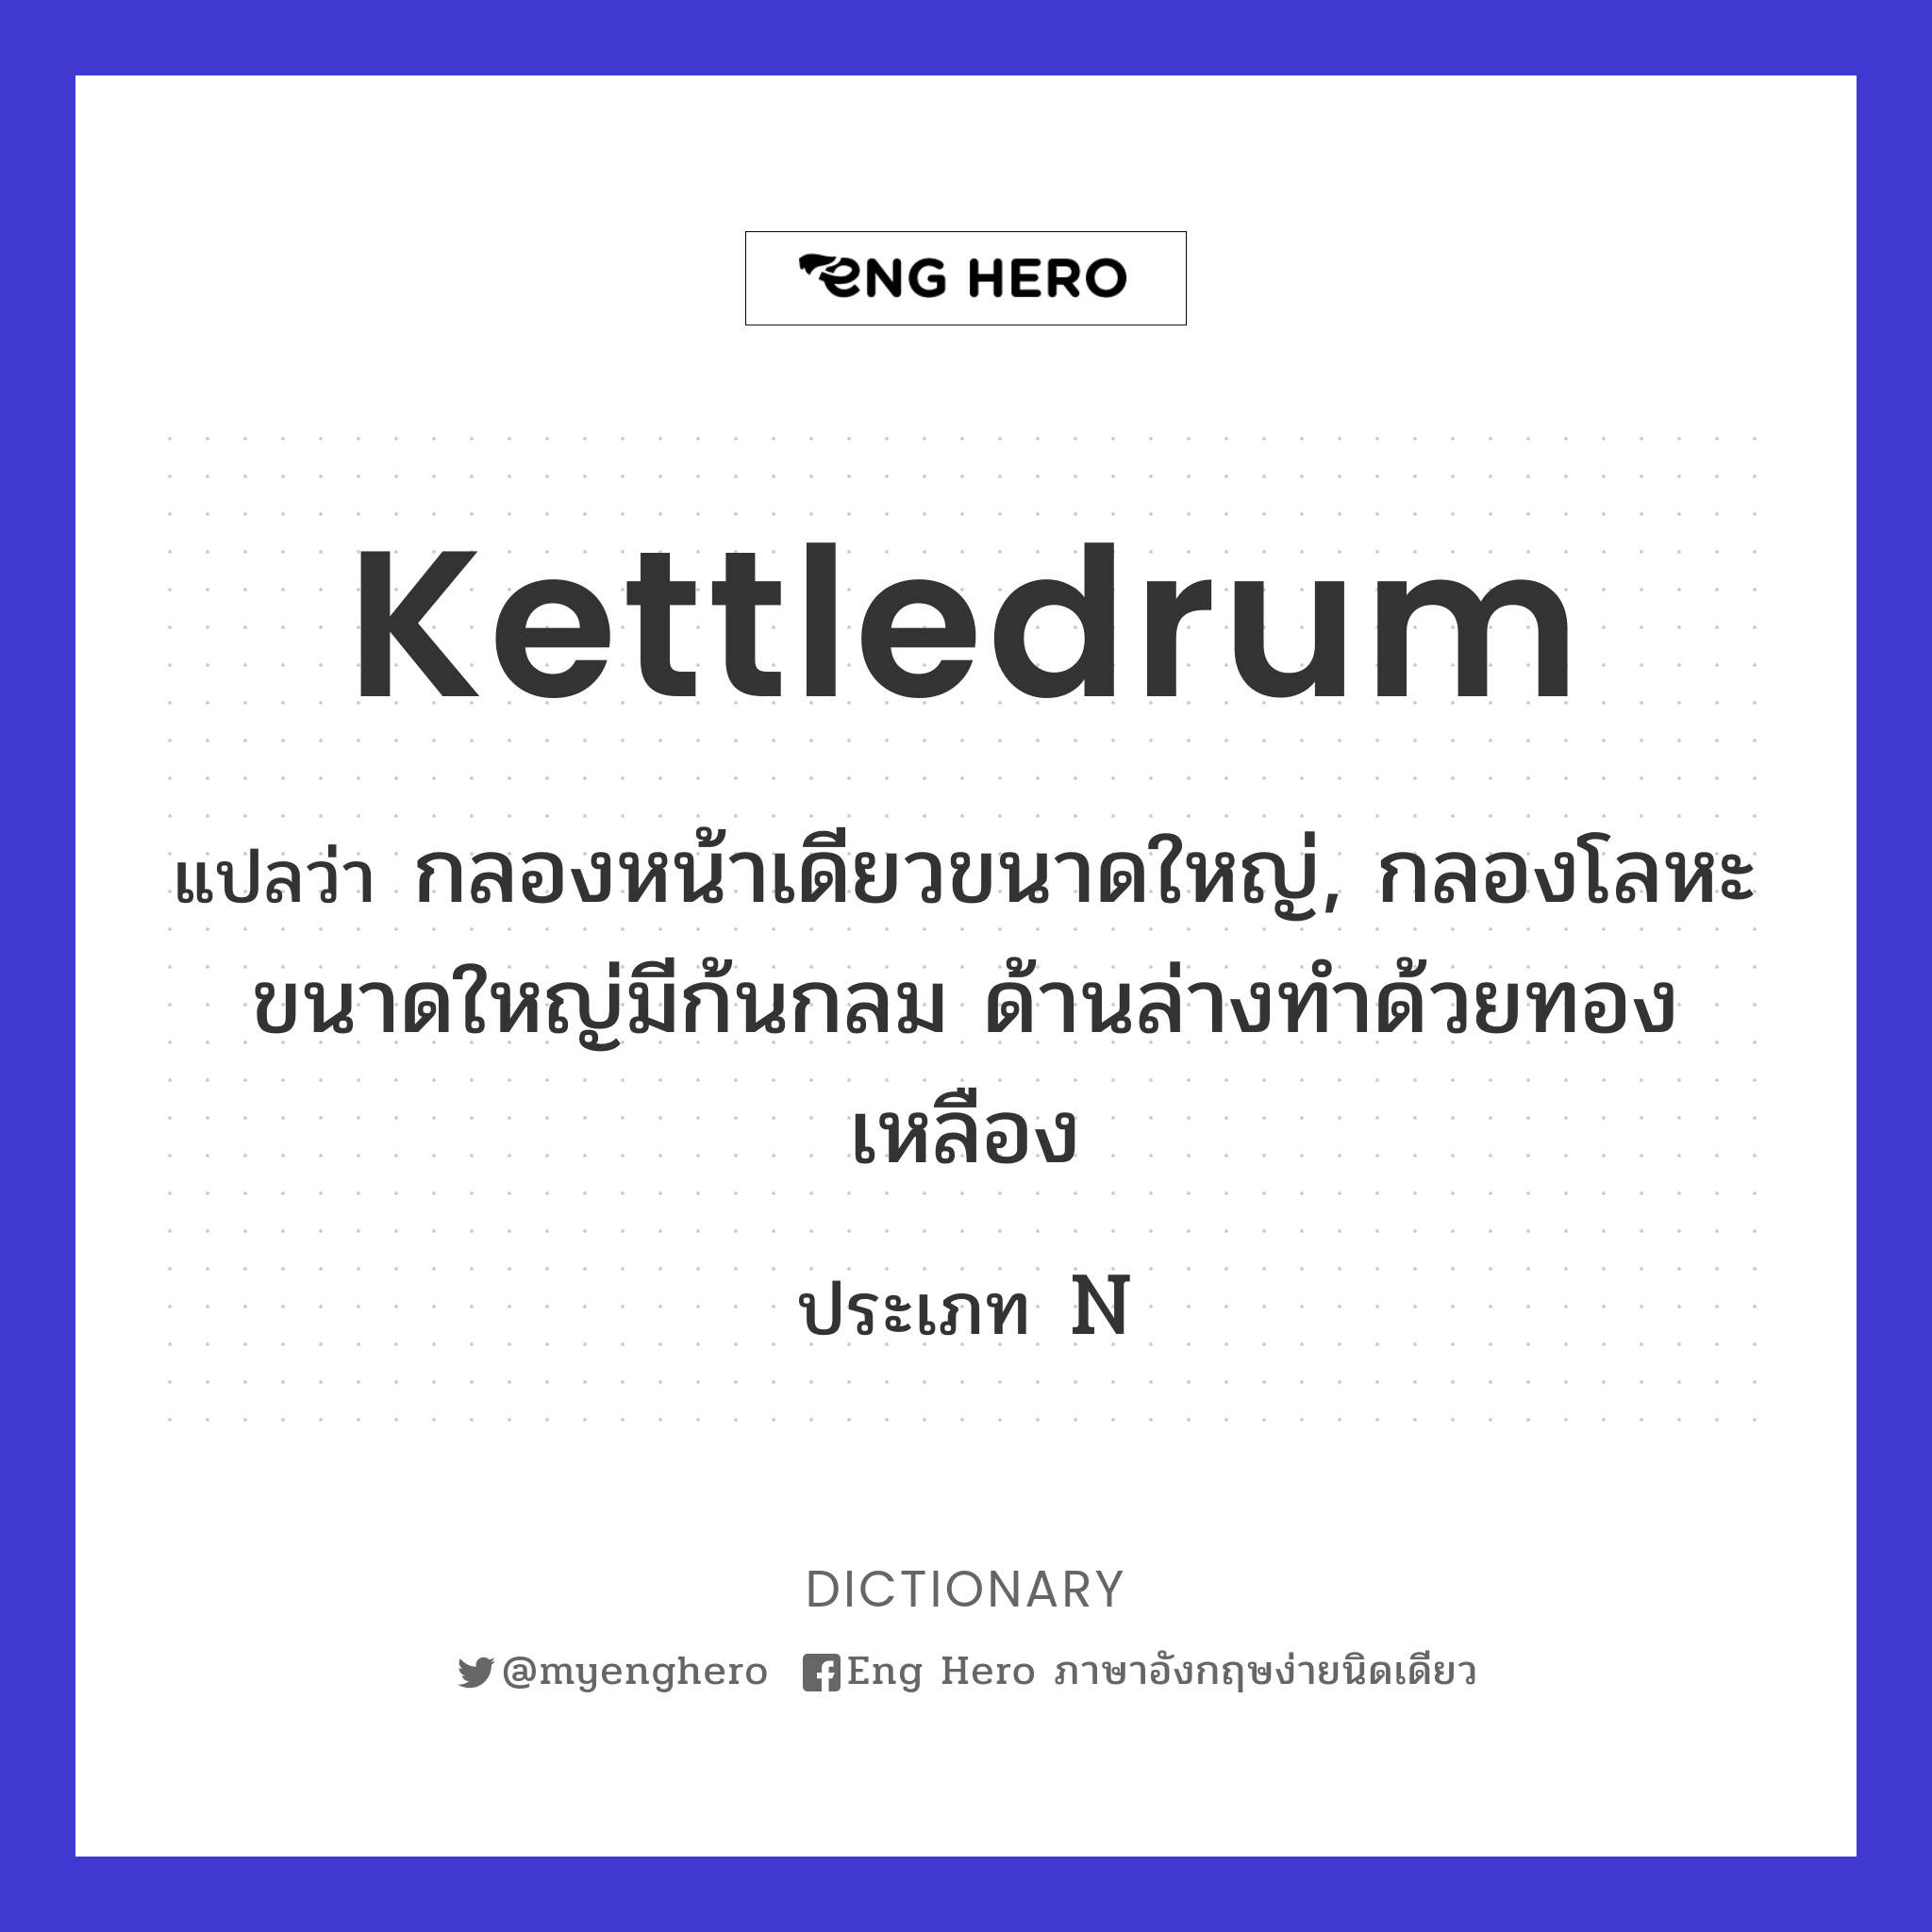 kettledrum